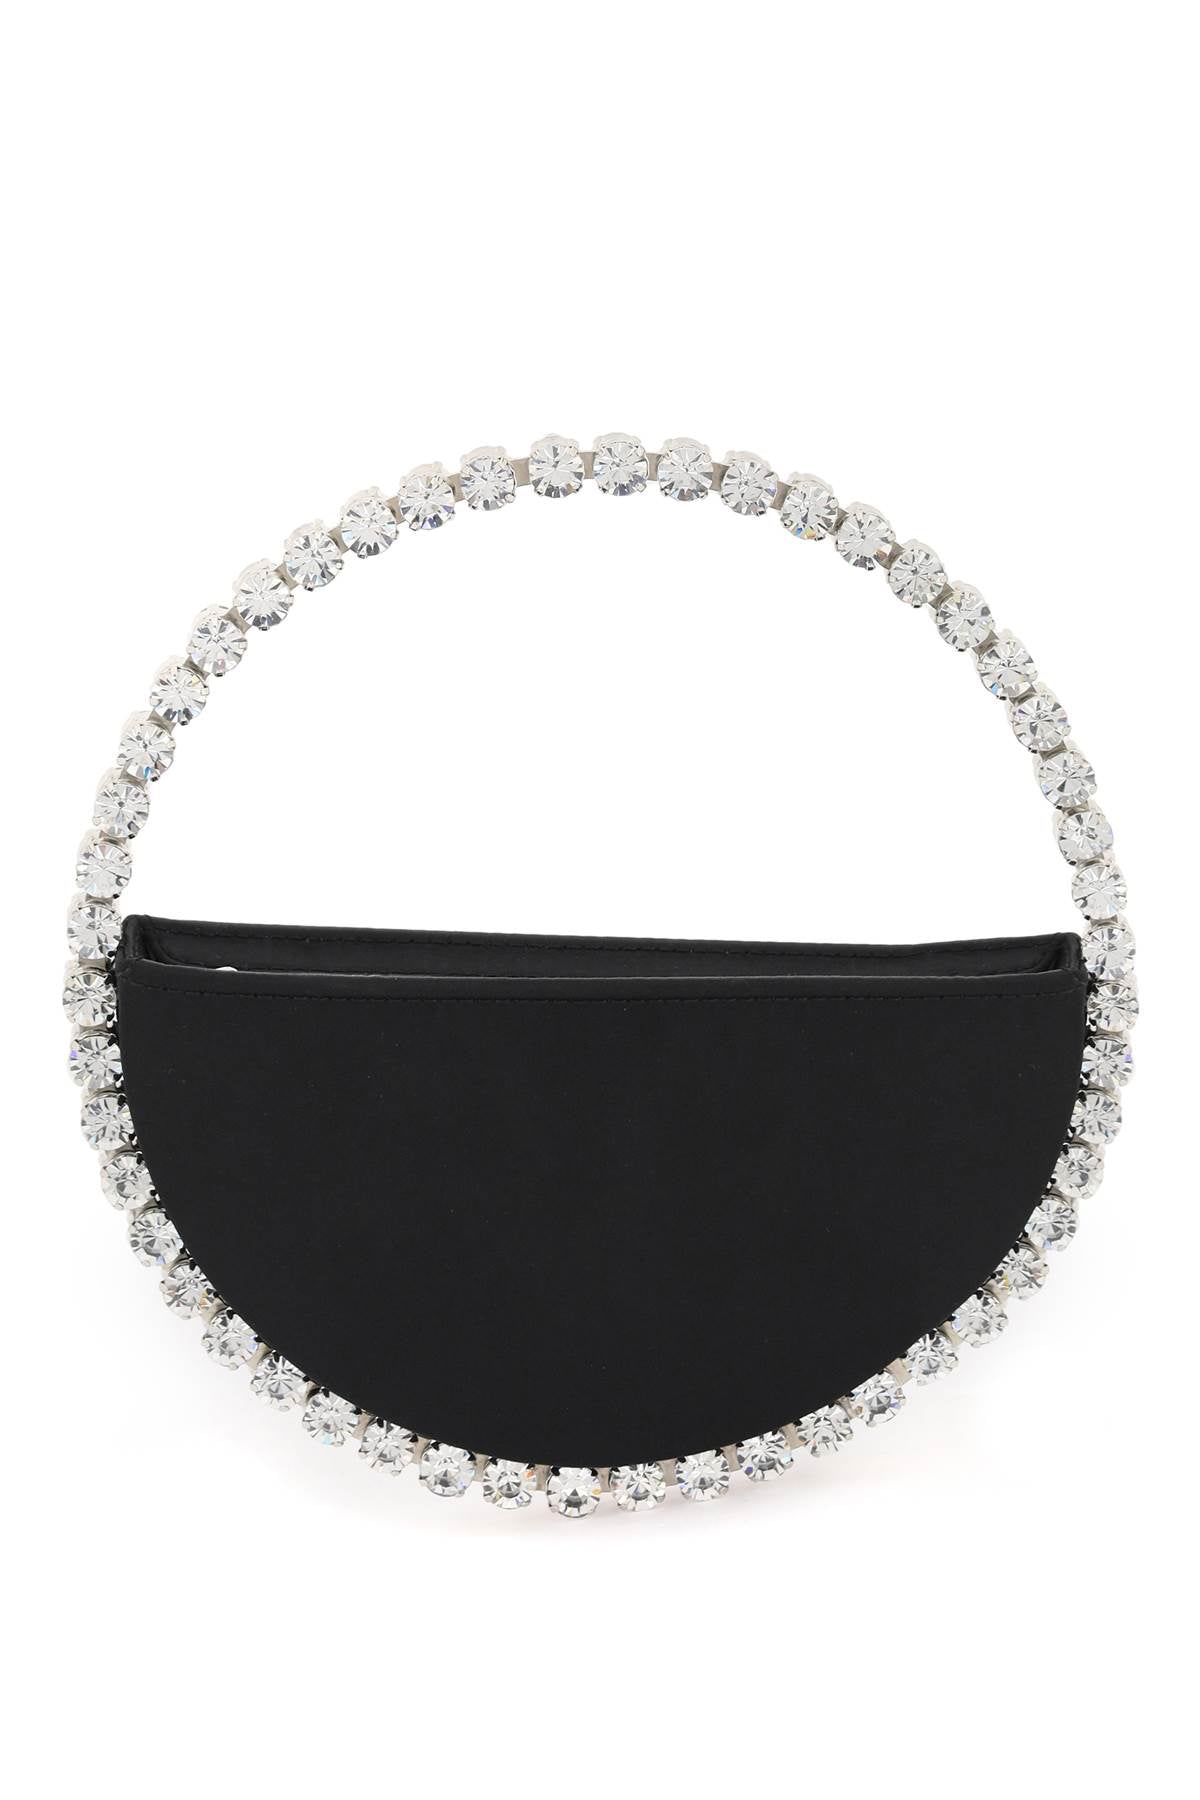 L'ALINGI Elegant Black Eternity Clutch with Crystal-Embedded Metal Ring